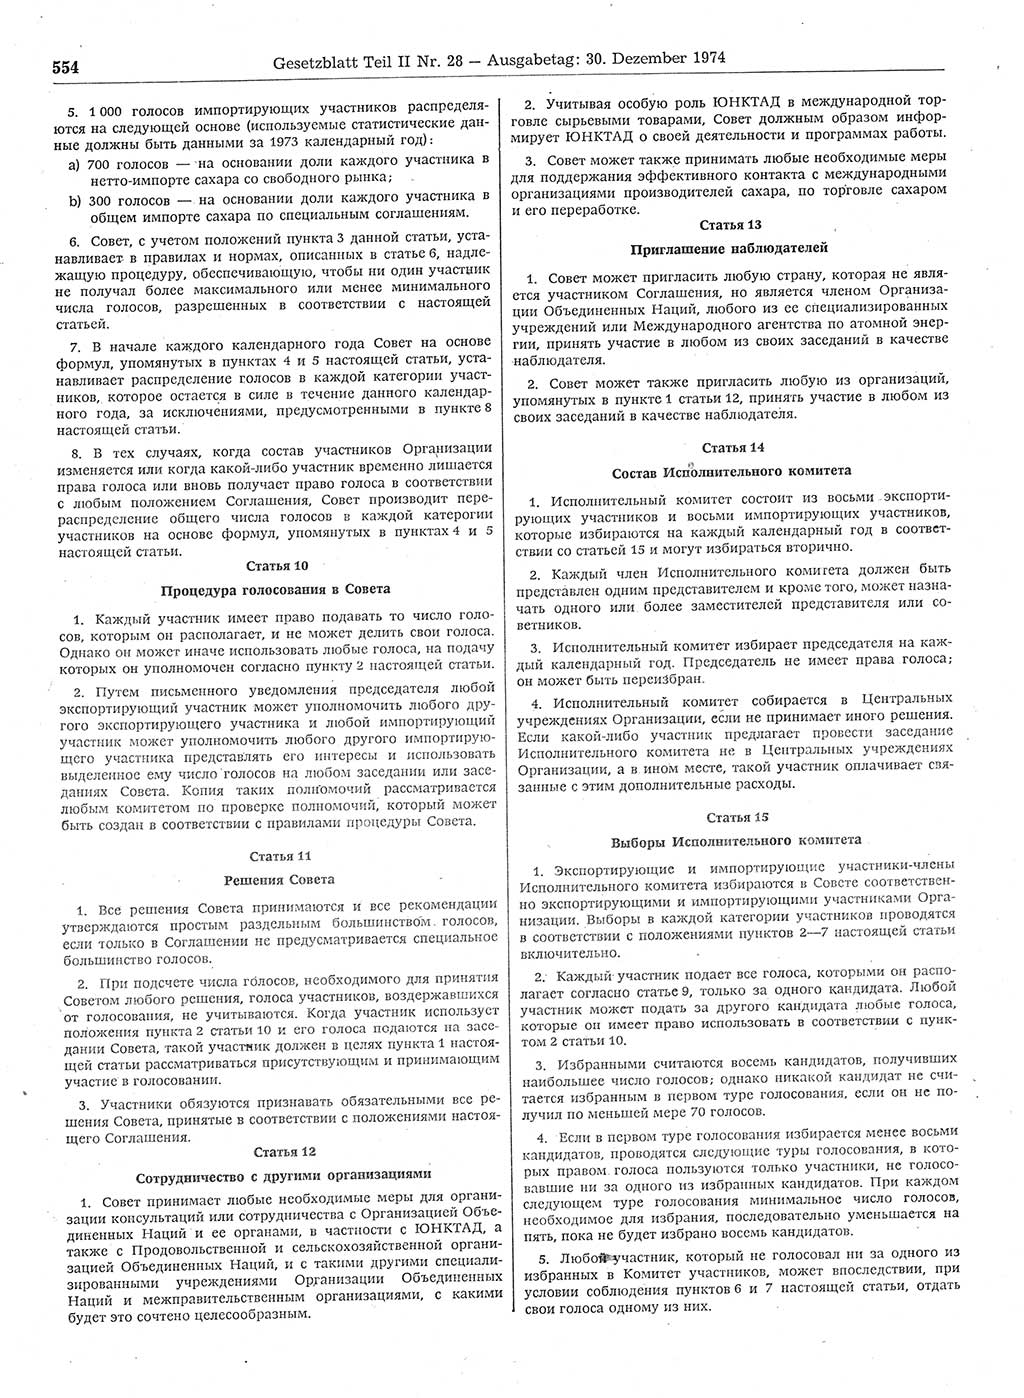 Gesetzblatt (GBl.) der Deutschen Demokratischen Republik (DDR) Teil ⅠⅠ 1974, Seite 554 (GBl. DDR ⅠⅠ 1974, S. 554)